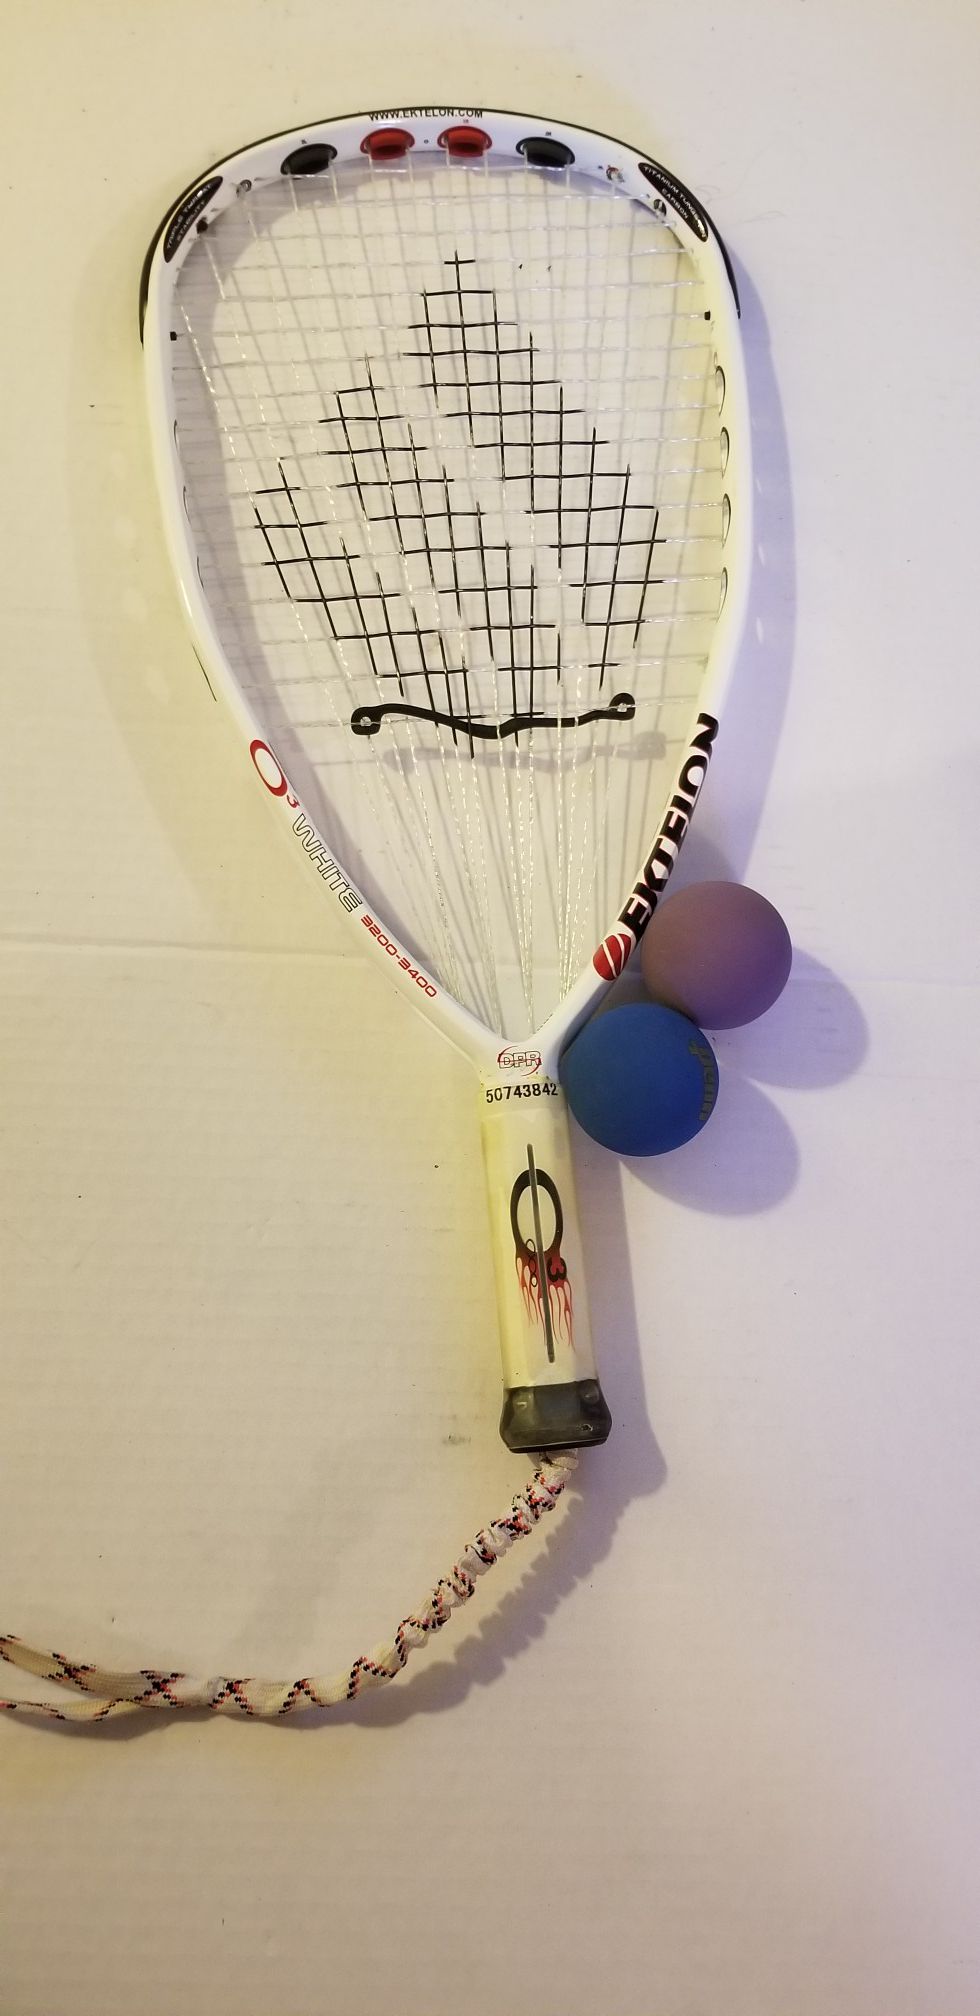 Ektelon O3 White racquetball racket